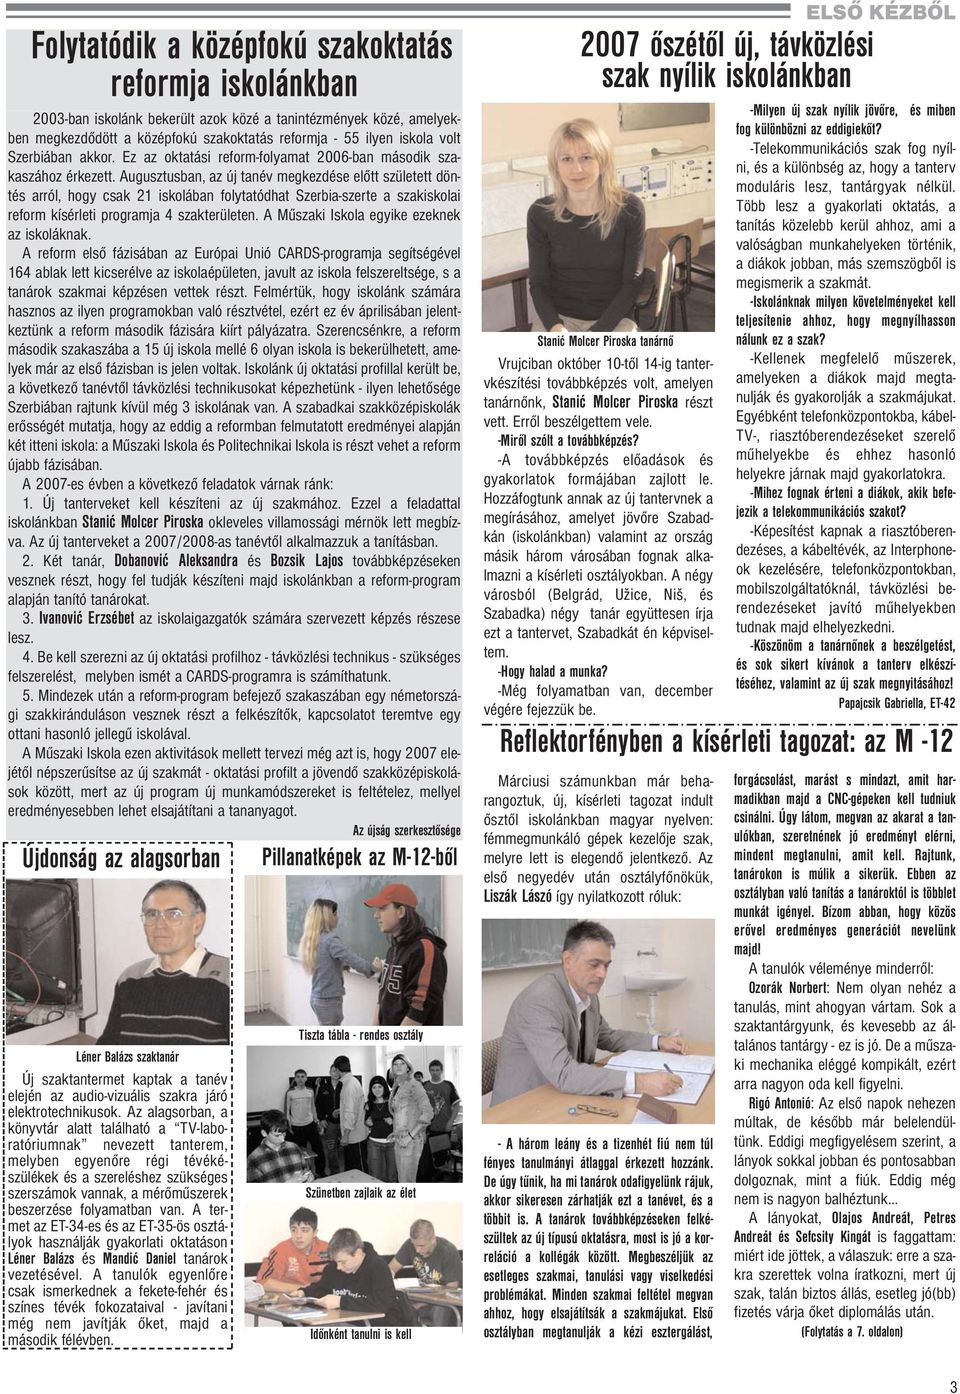 Augusztusban, az új tanév megkezdése előtt született döntés arról, hogy csak 21 iskolában folytatódhat Szerbia-szerte a szakiskolai reform kísérleti programja 4 szakterületen.